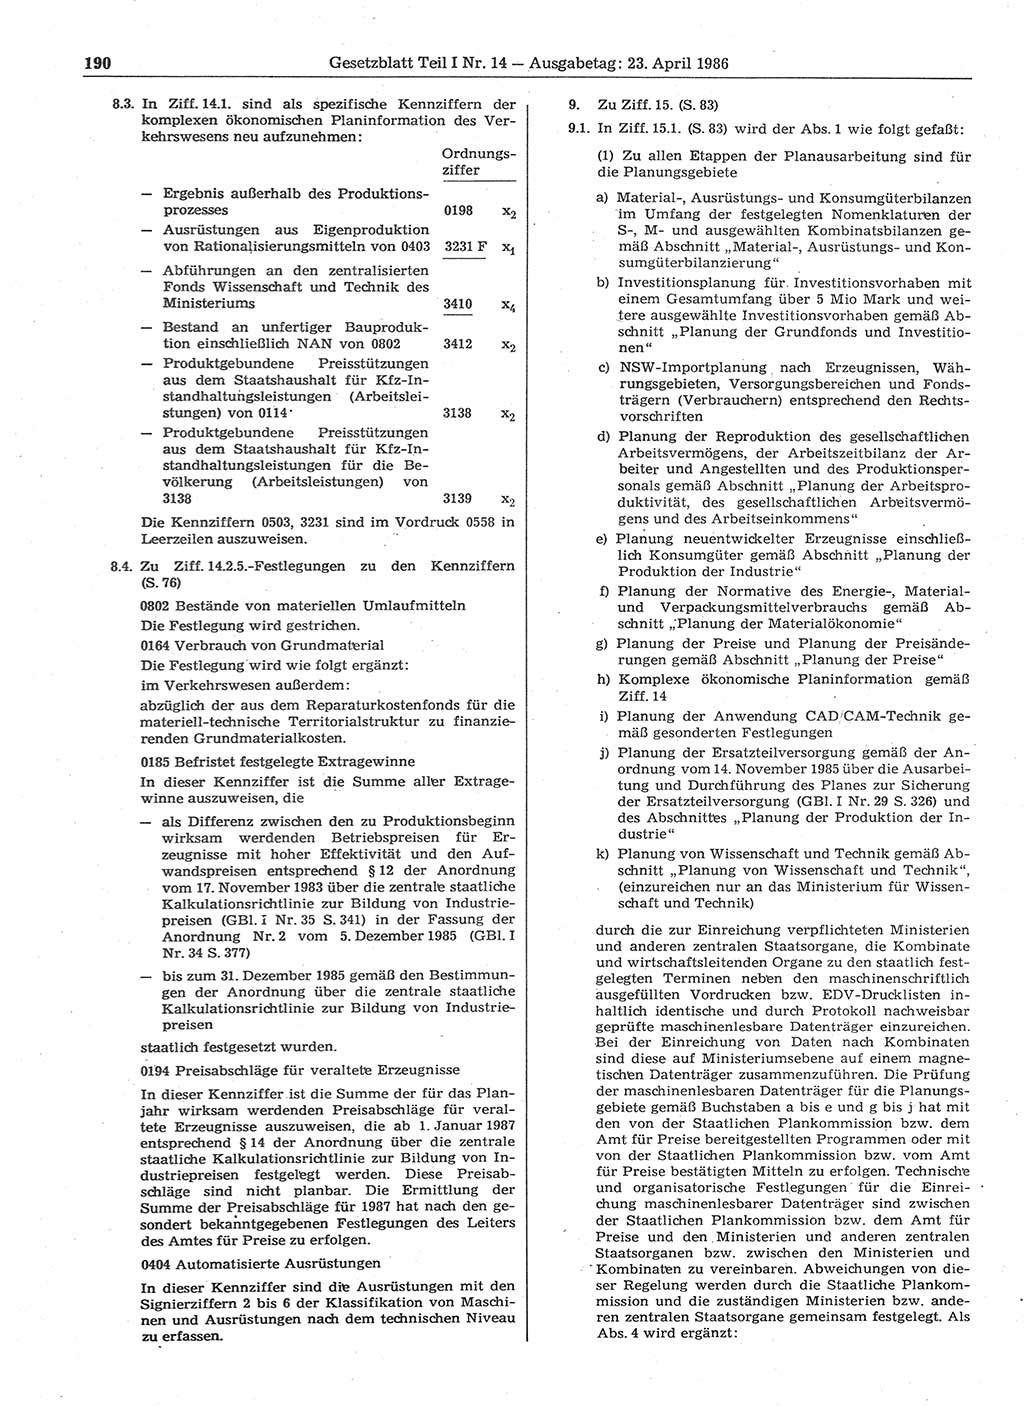 Gesetzblatt (GBl.) der Deutschen Demokratischen Republik (DDR) Teil Ⅰ 1986, Seite 190 (GBl. DDR Ⅰ 1986, S. 190)